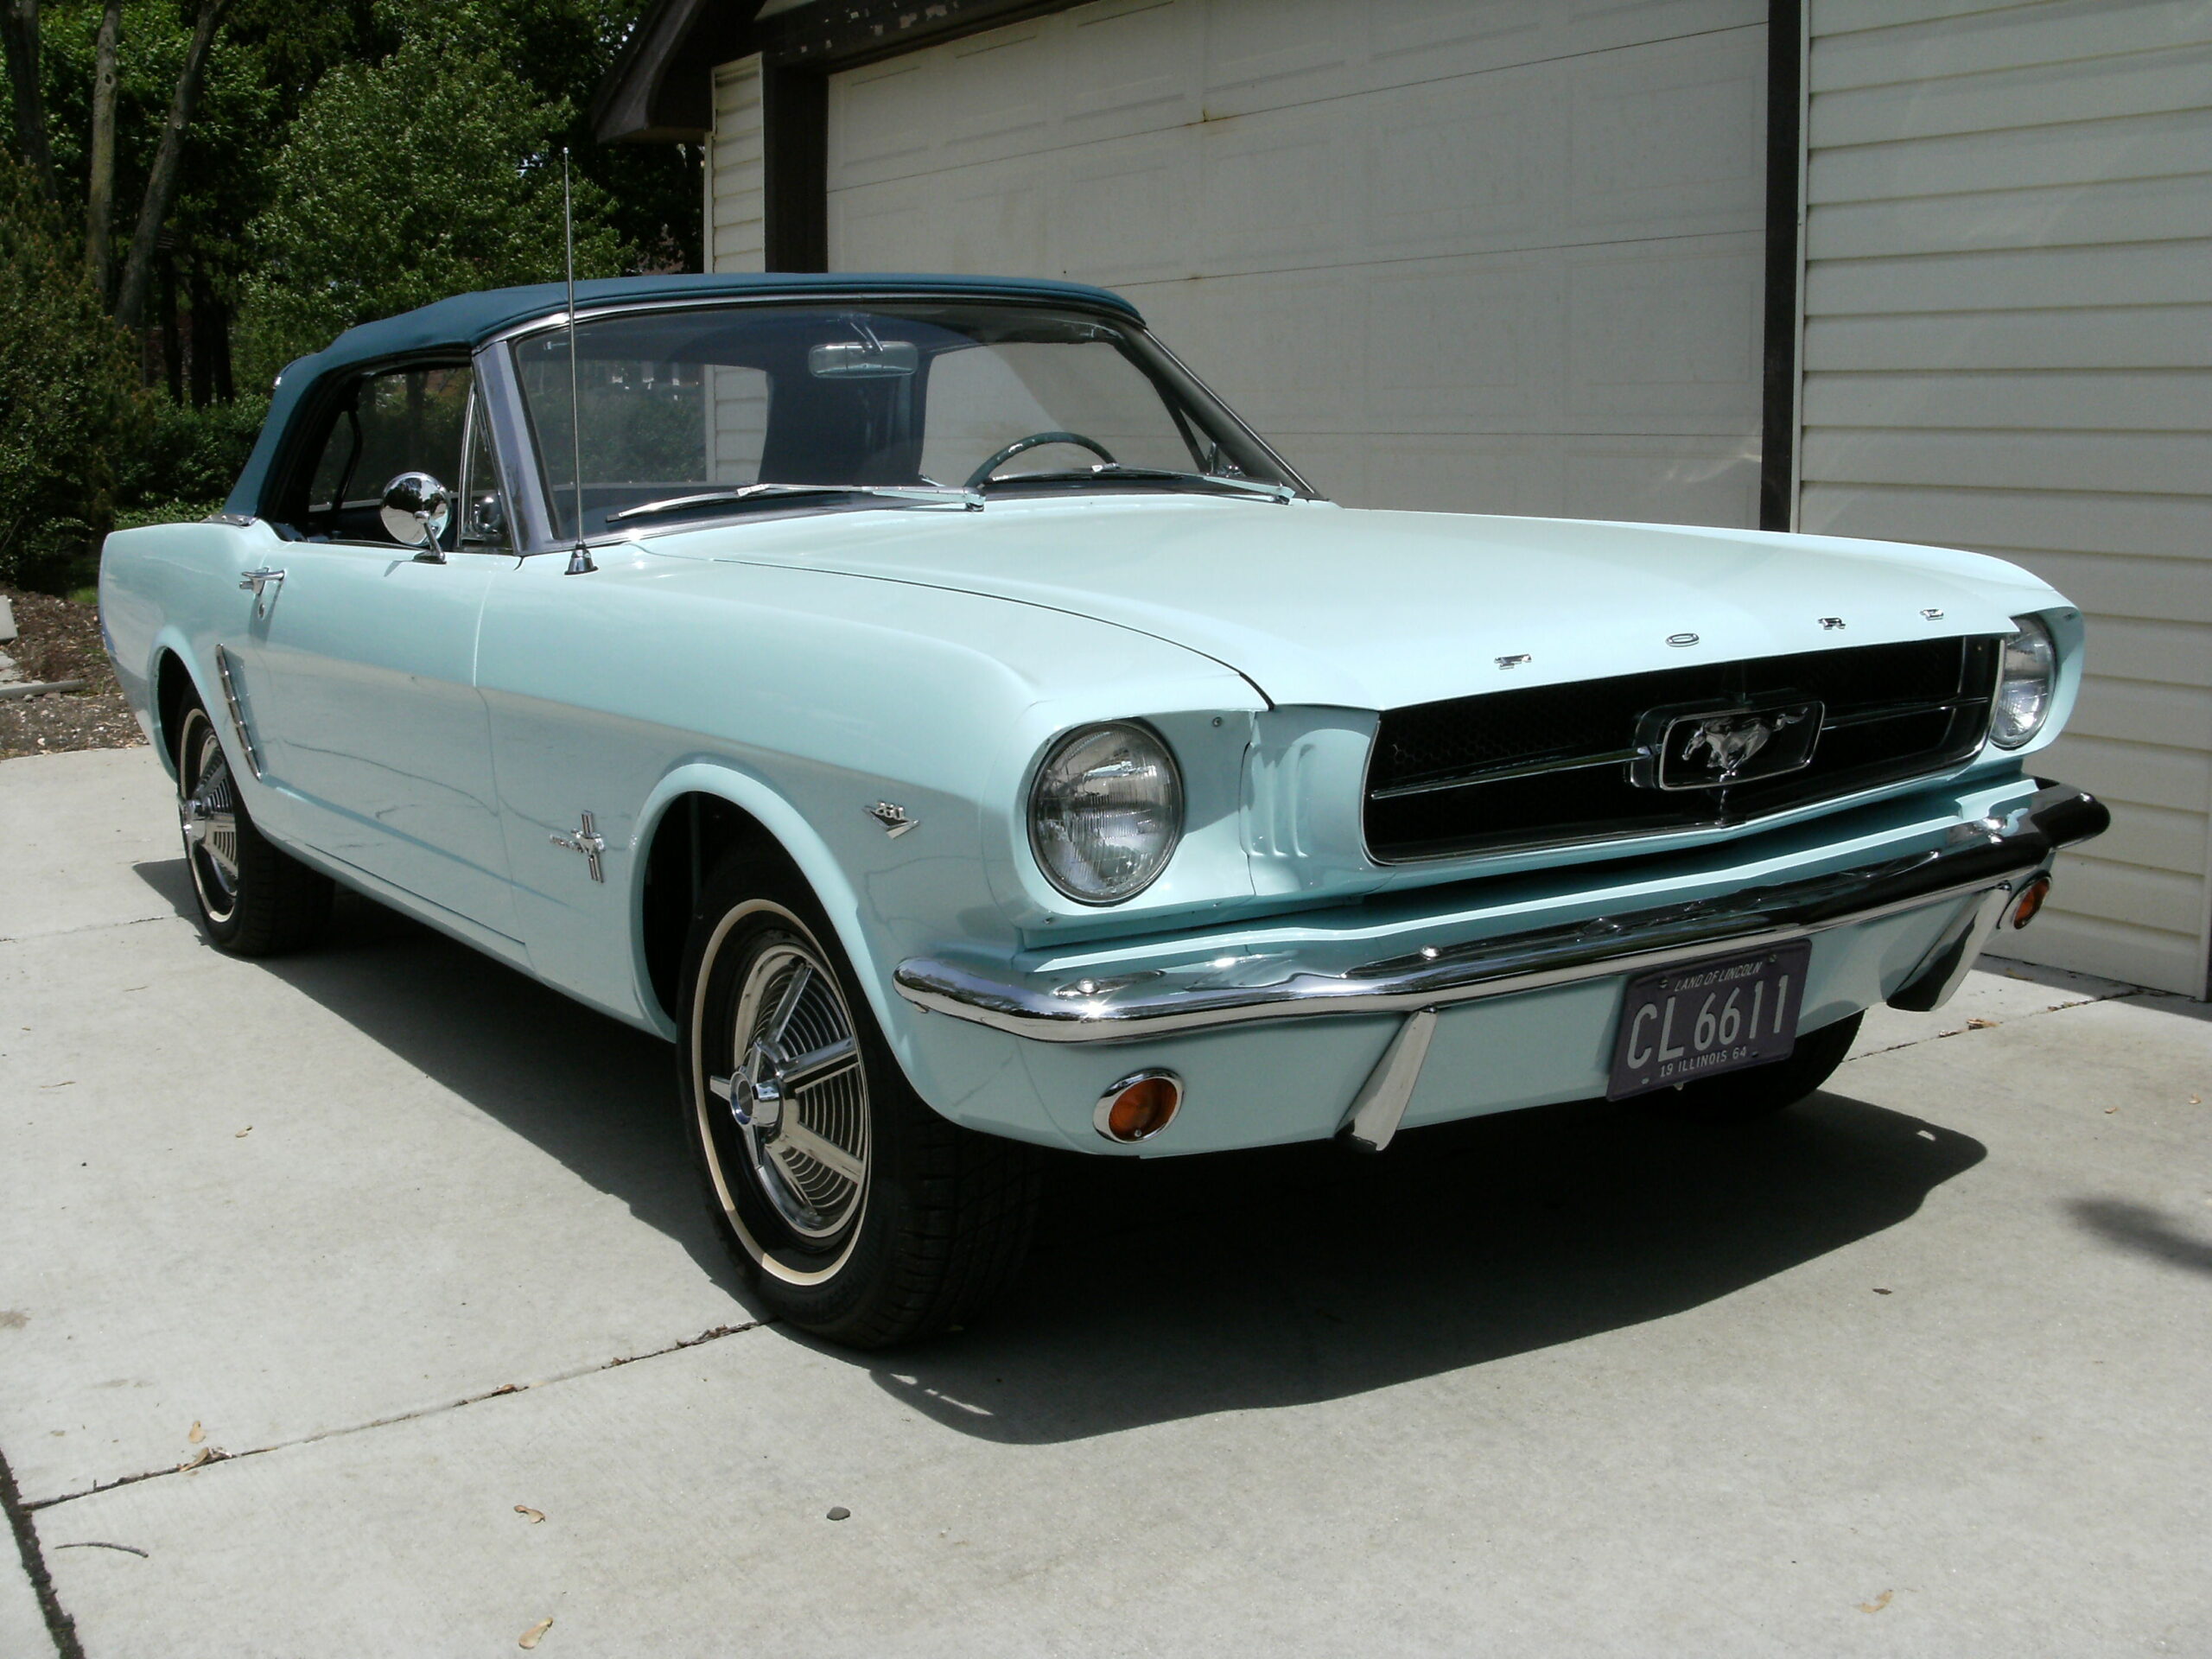 Conheçam a história da primeira unidade vendida do Ford Mustang